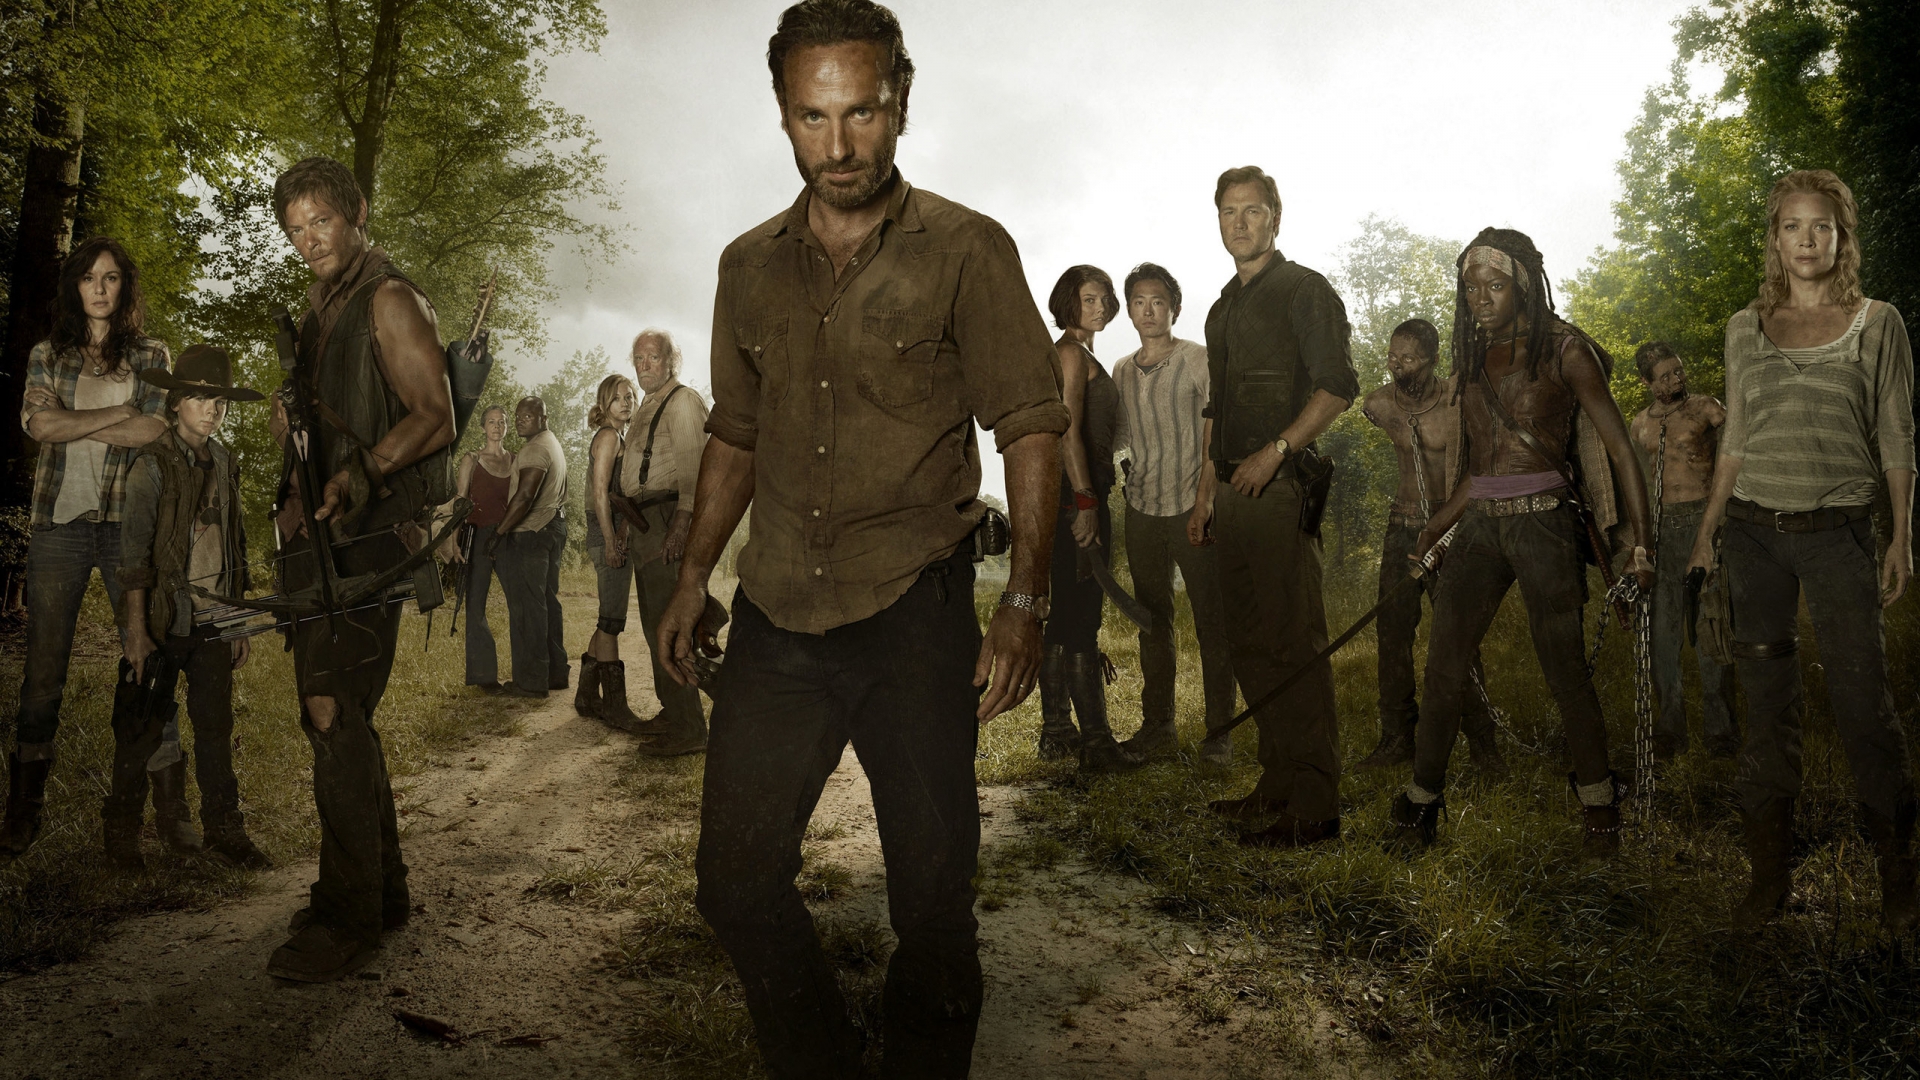 The Walking Dead Full Cast for 1920 x 1080 HDTV 1080p resolution